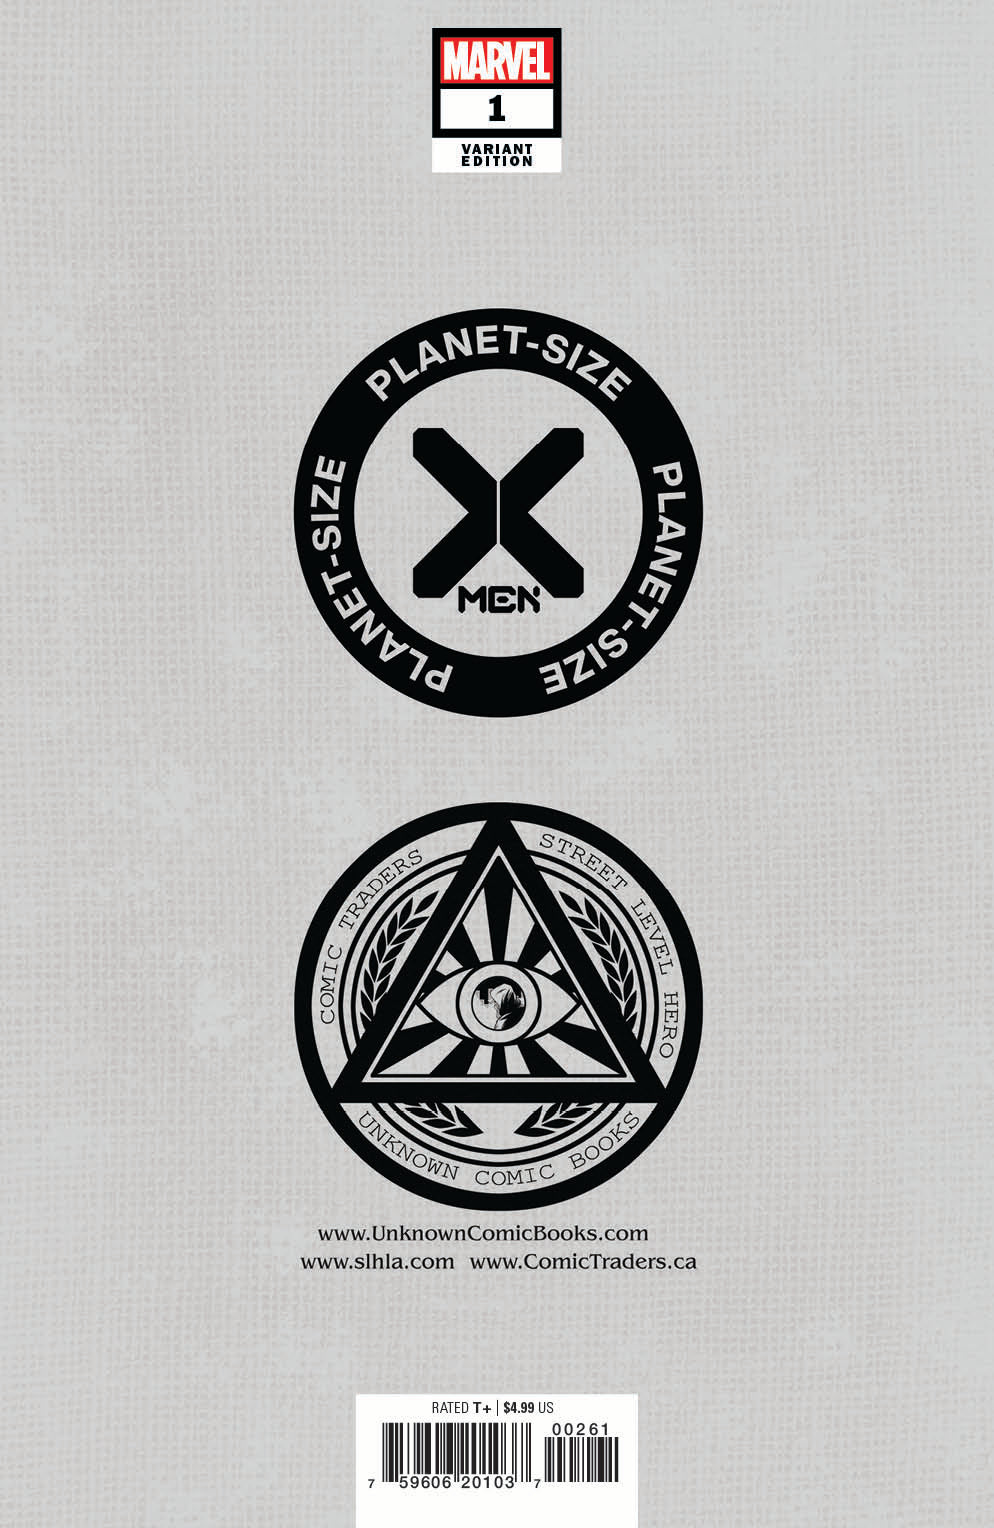 PLANET-SIZED X-MEN #1 UNKNOWN COMICS DAVID NAKAYAMA EXCLUSIVE VAR GALA (06/16/2021)